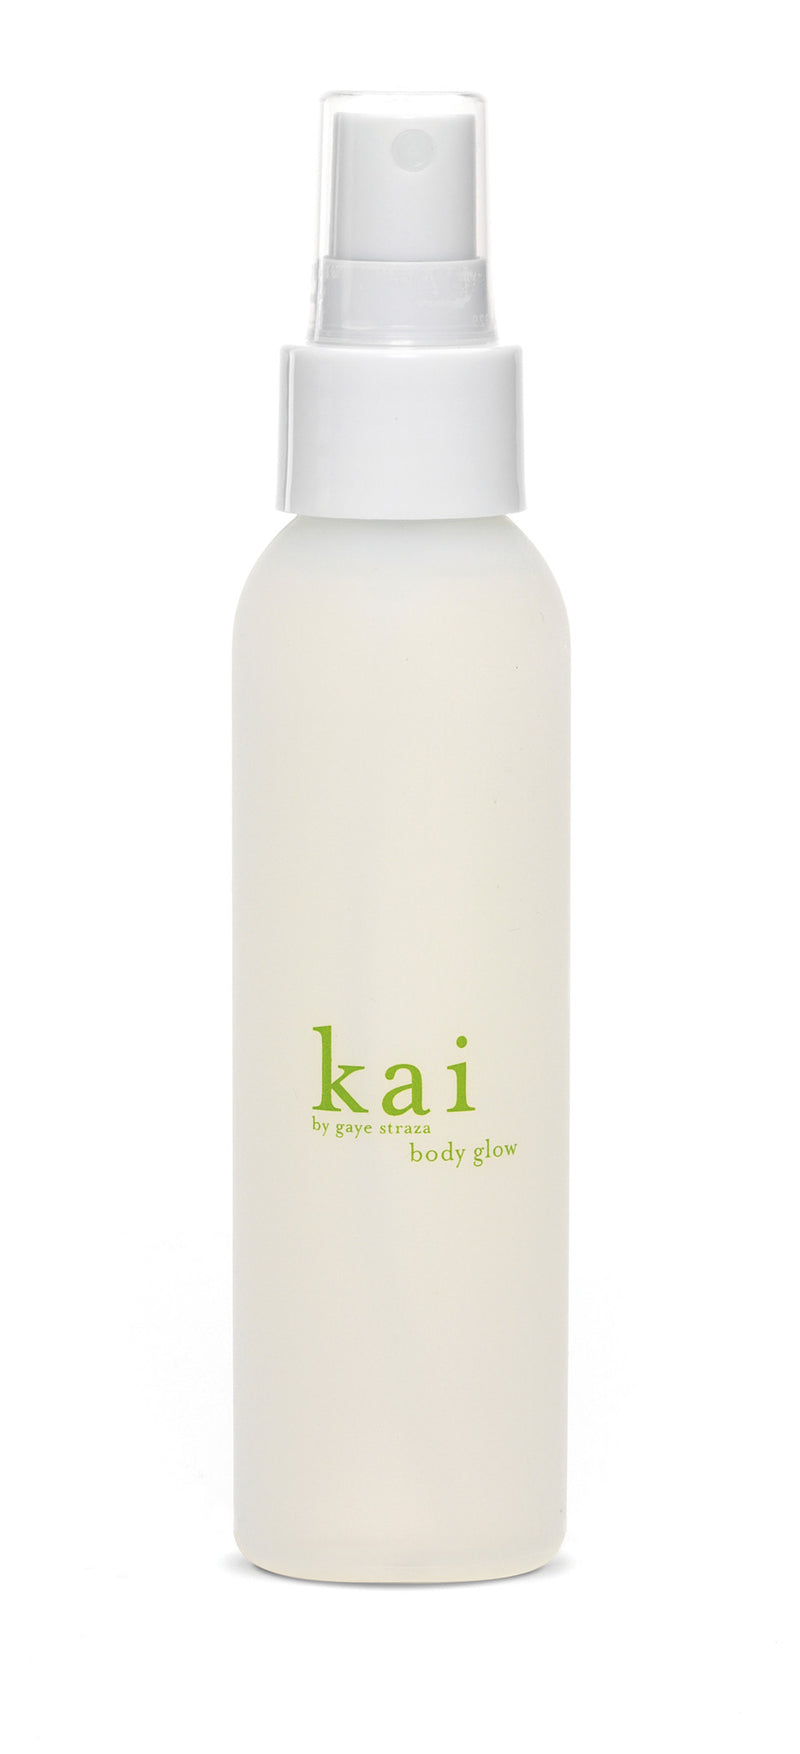 media image for kai body glow design by kai fragrance 1 299